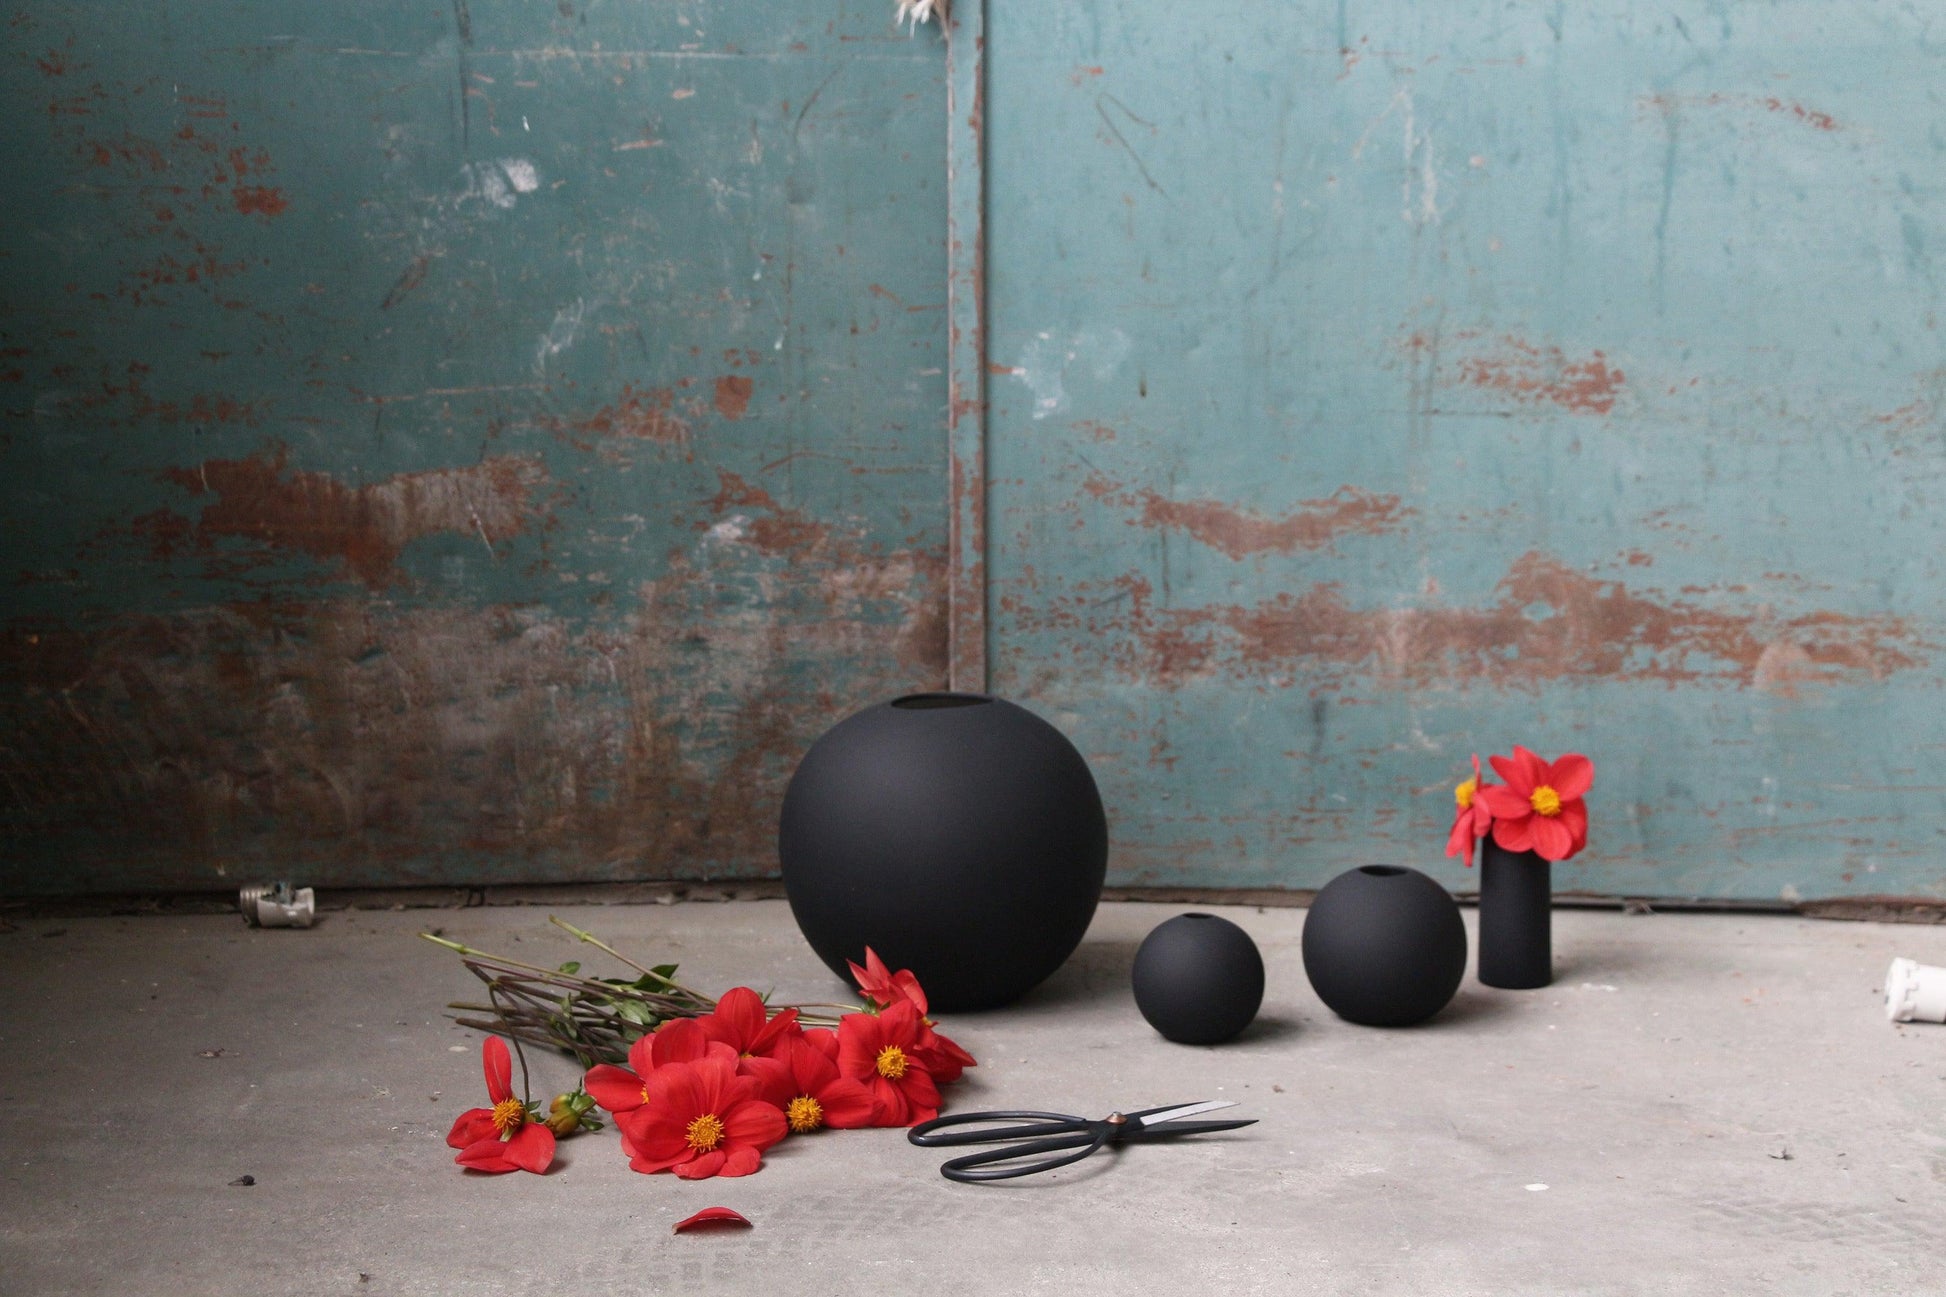 DIMM: Cooee Design Ball vase · black · margar stærðir